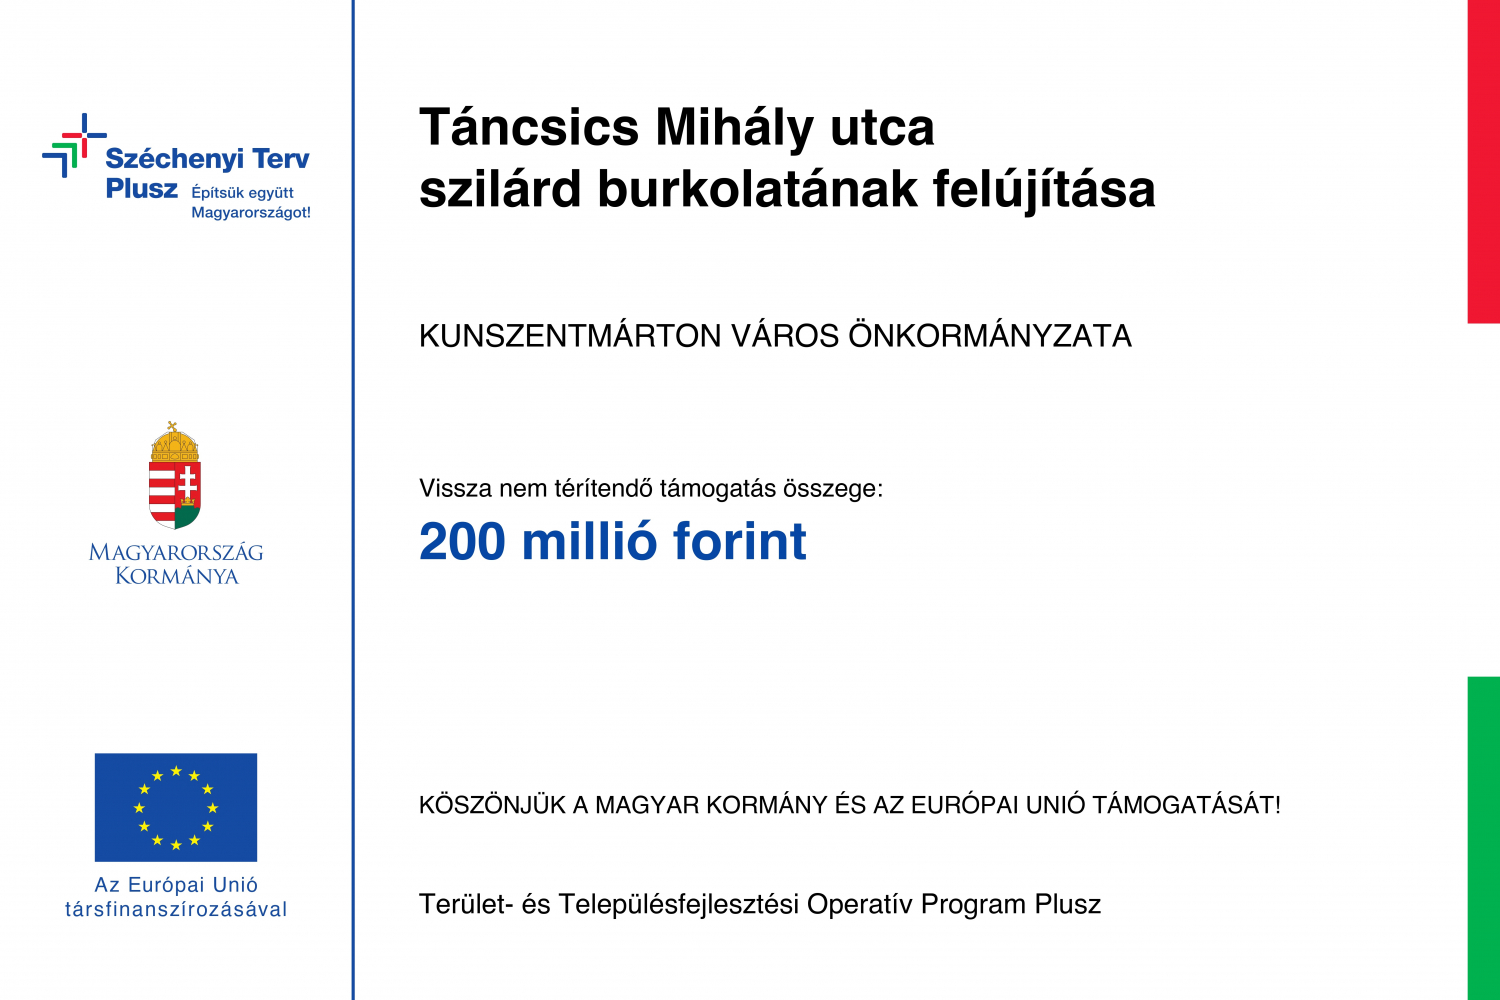 Kunszentmárton Táncsics Mihály utca szilárd burkolatának felújítása  -  TOP_PLUSZ-1.2.3-21-JN1-2022-00013